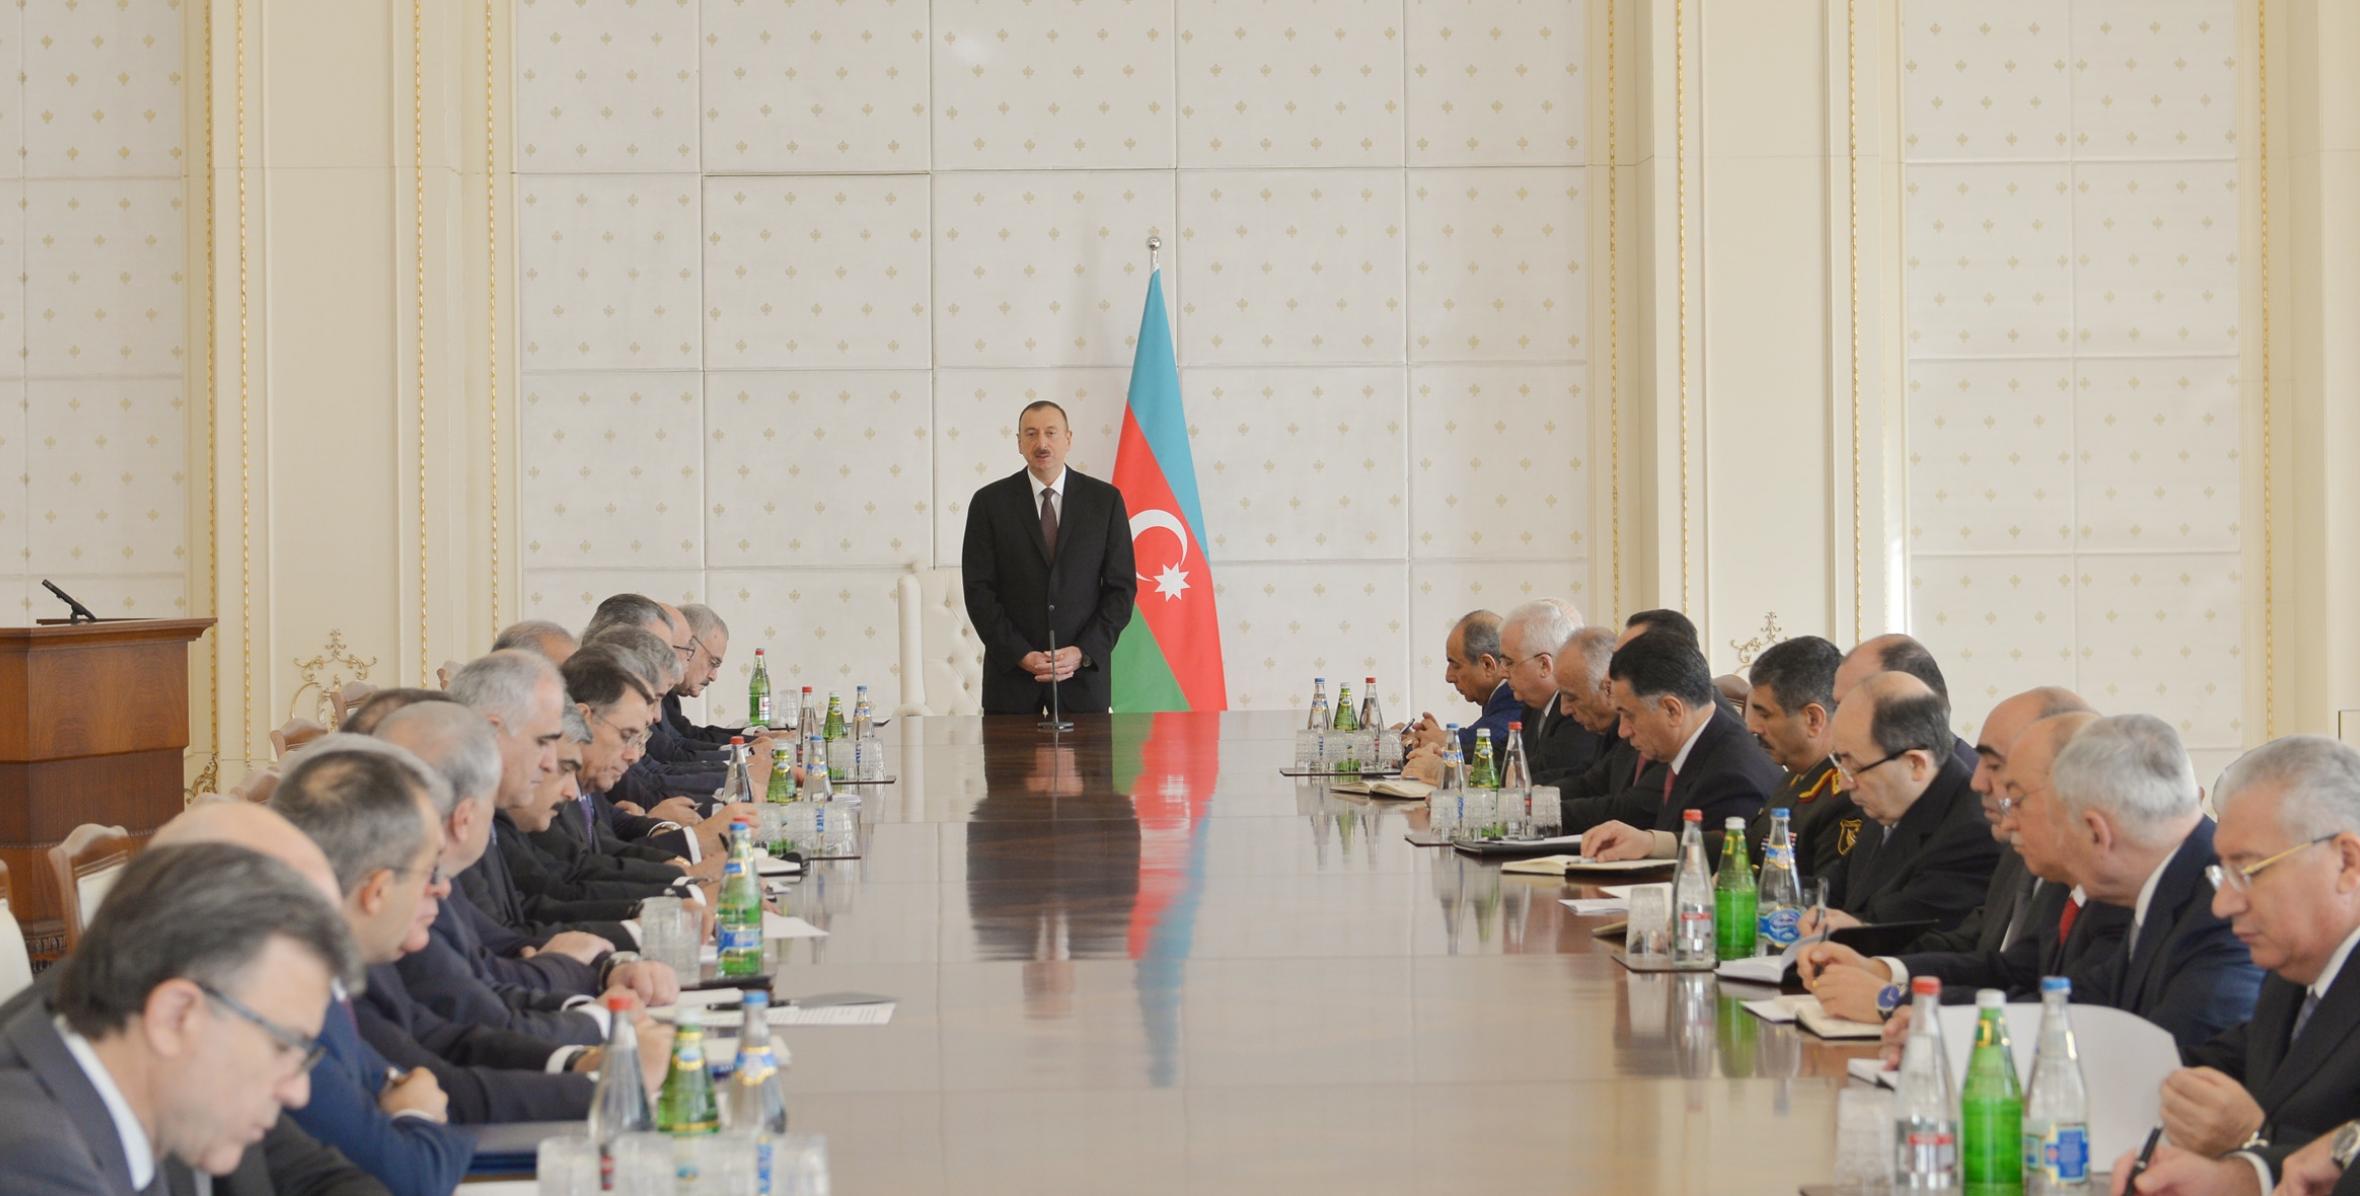 Под председательством Ильхама Алиева состоялось заседание Кабинета Министров, посвященное итогам социально-экономического развития в первом квартале 2014 года и предстоящим задачам